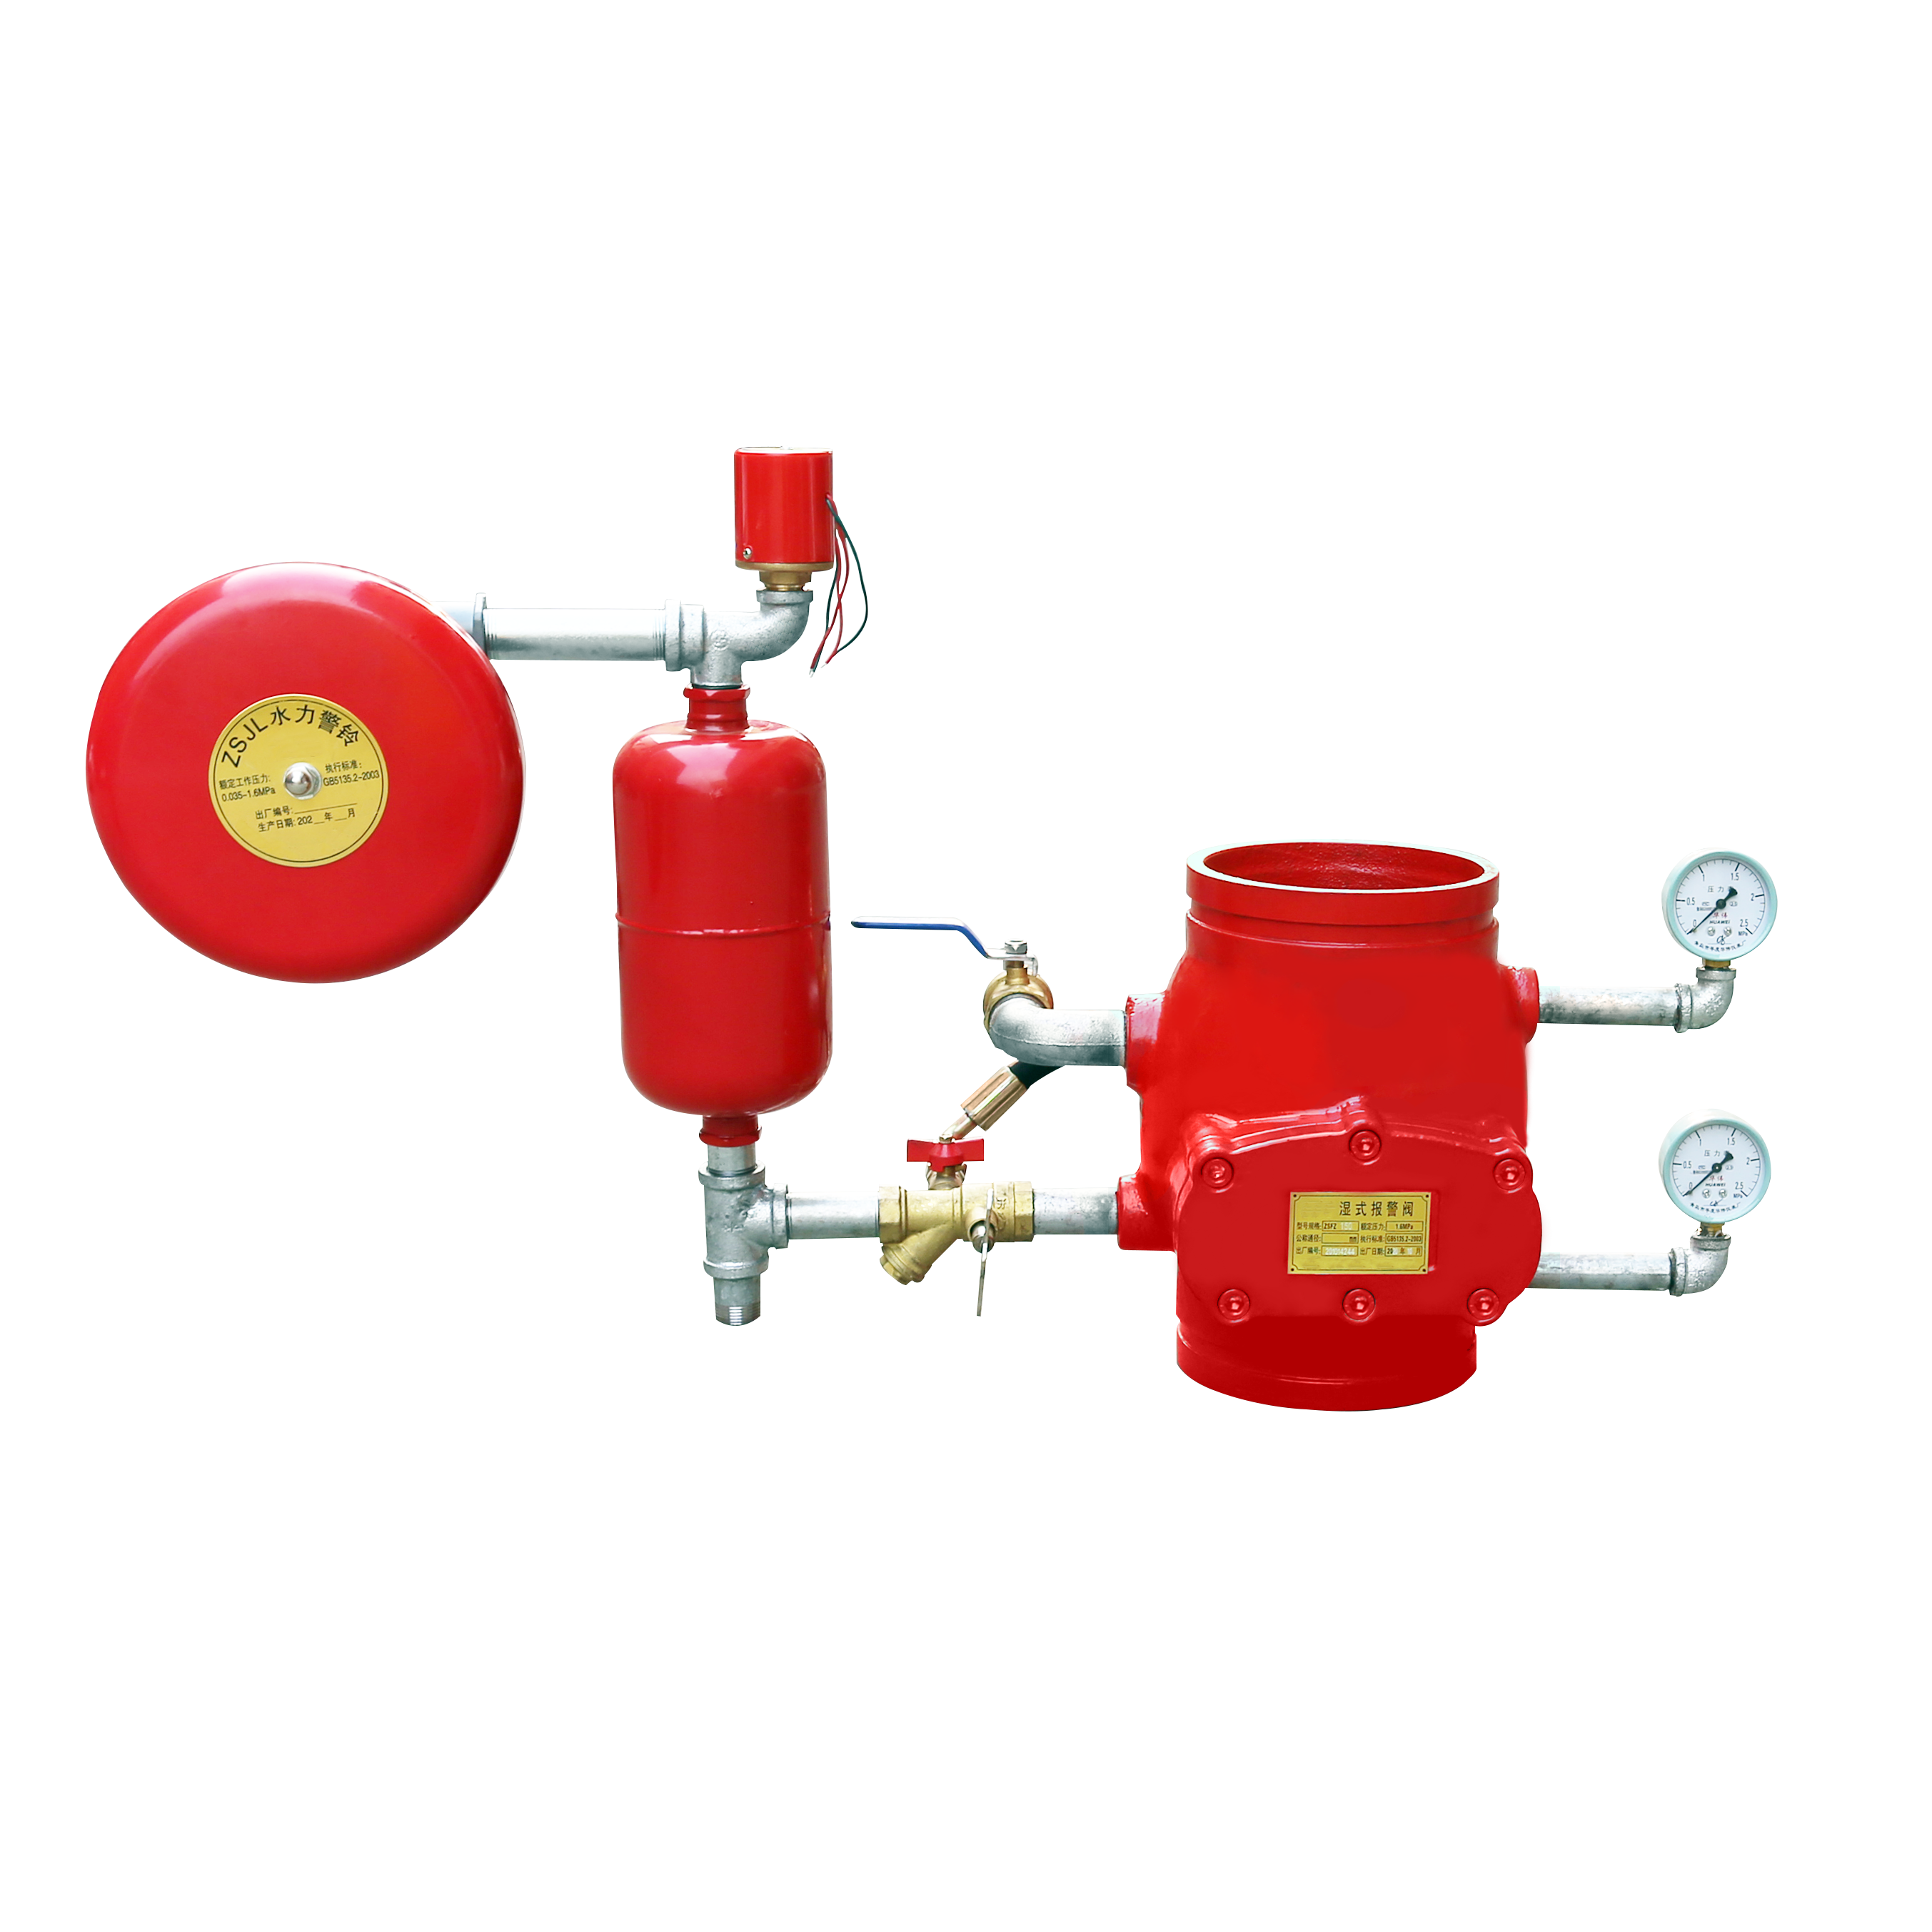 válvula de alarme; sistema de sprinkler automático; válvula de alarme de dilúvio; combate a incêndios molhado; sprinkler de incêndio; cabeças de sprinkler